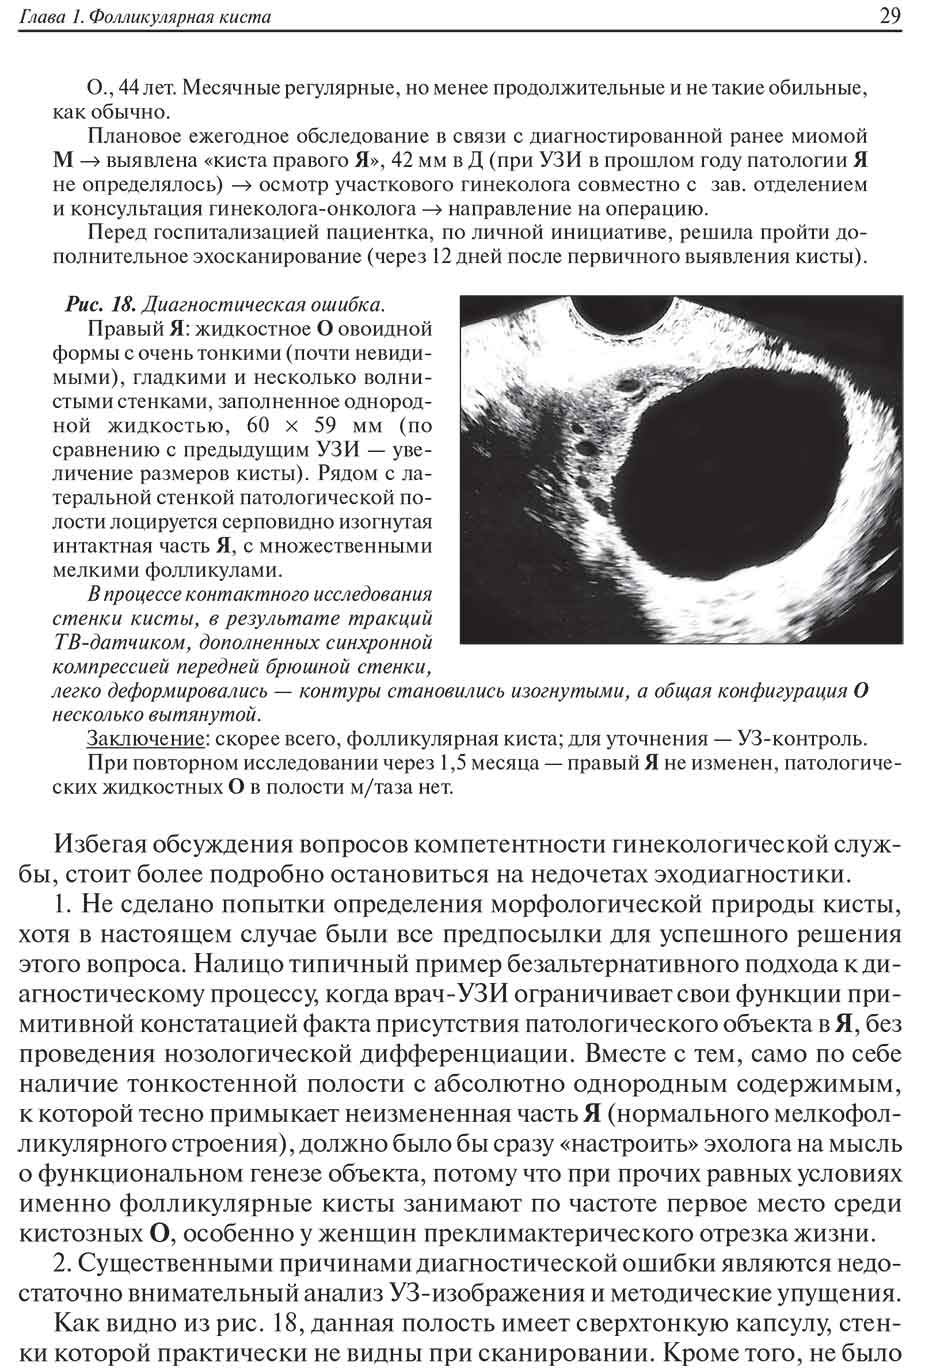 Пример страницы из книги "Ультразвуковая симптоматика и дифференциальная диагностика кист и опухолей яичников" - Хачкурузов С. Г.